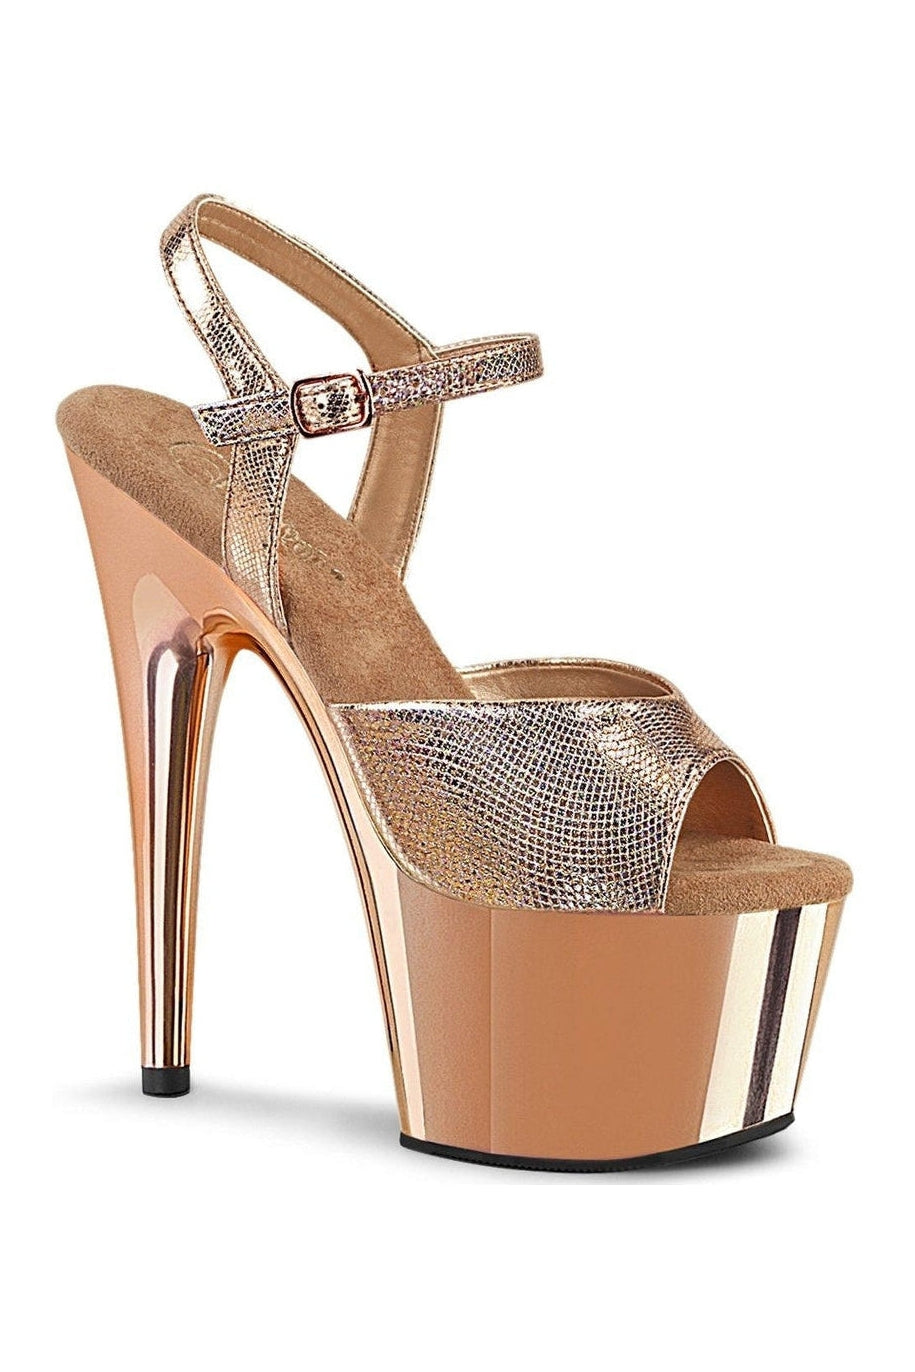 Pleaser RoseGold Sandals Platform Stripper Shoes | Buy at Sexyshoes.com